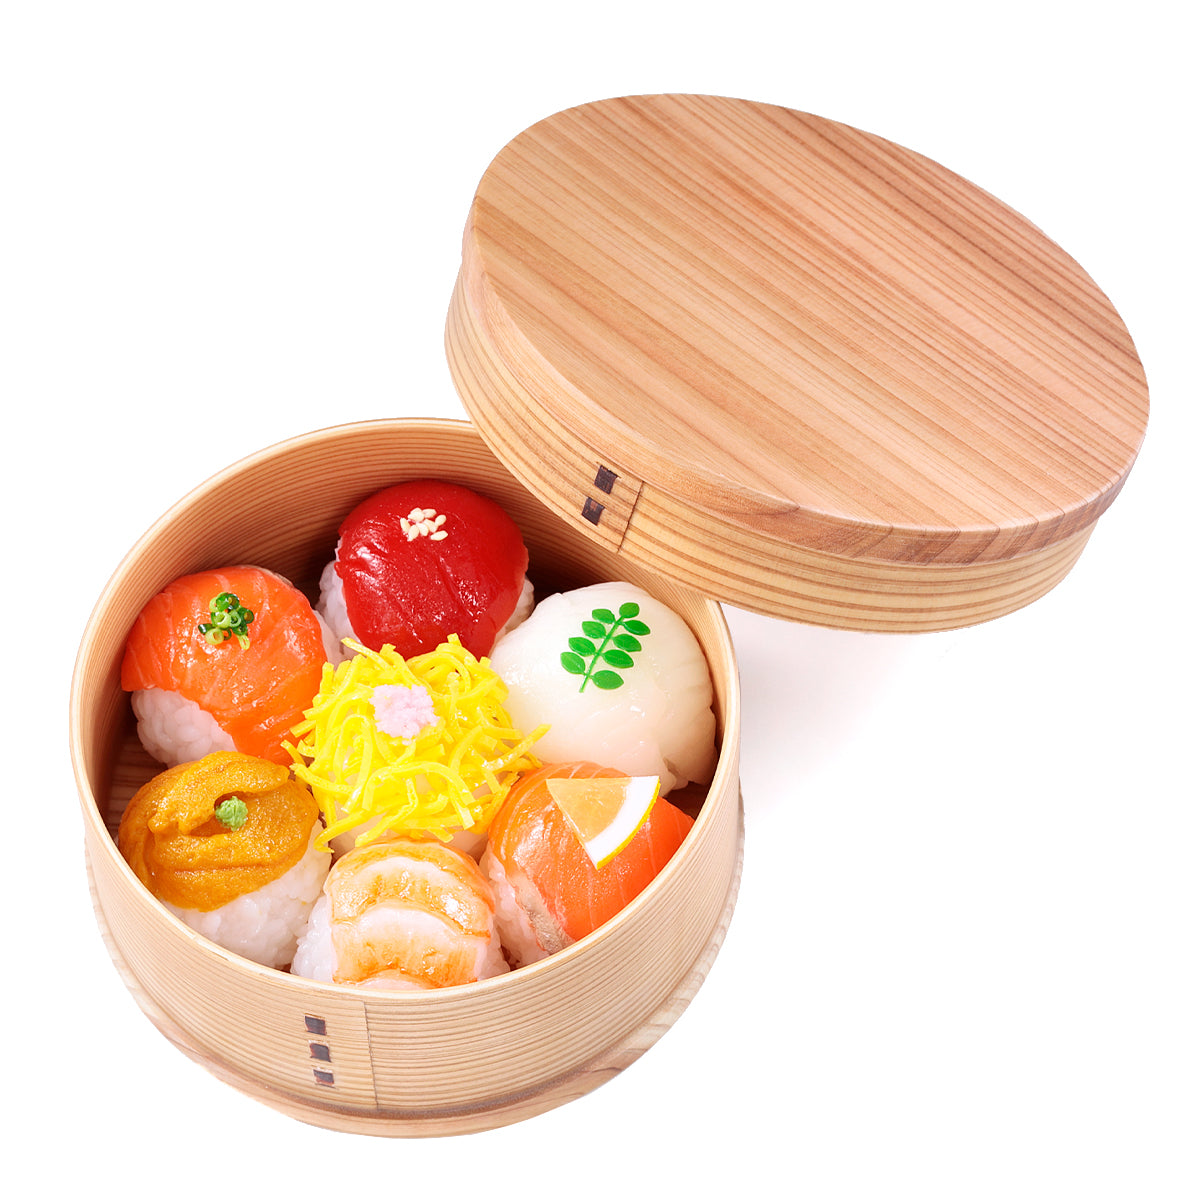 オリジナル食品サンプル「手毬寿司弁当」の商品画像です。(英語表記) Ball-shaped Sushi / Temari sushi